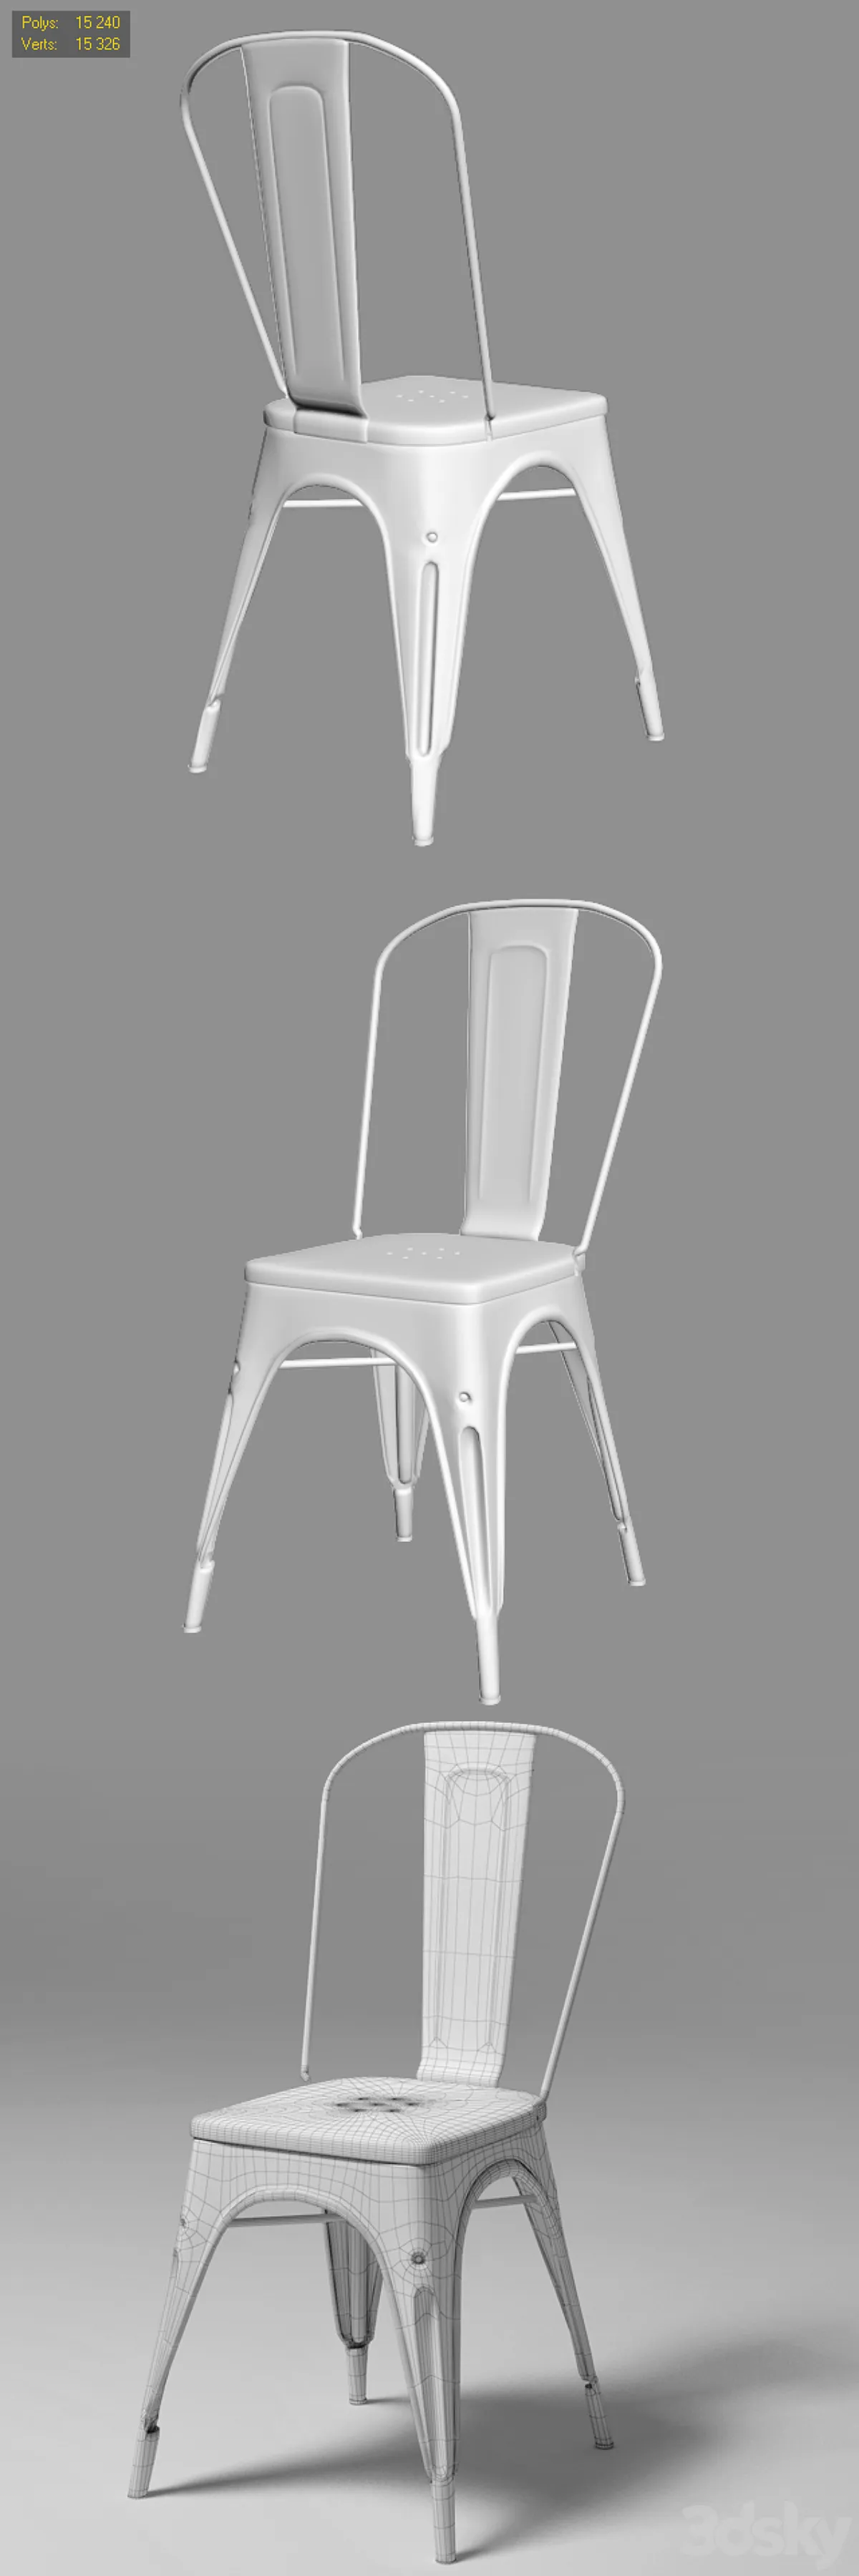 مدل سه بعدی صندلی مدرن 17 - 6